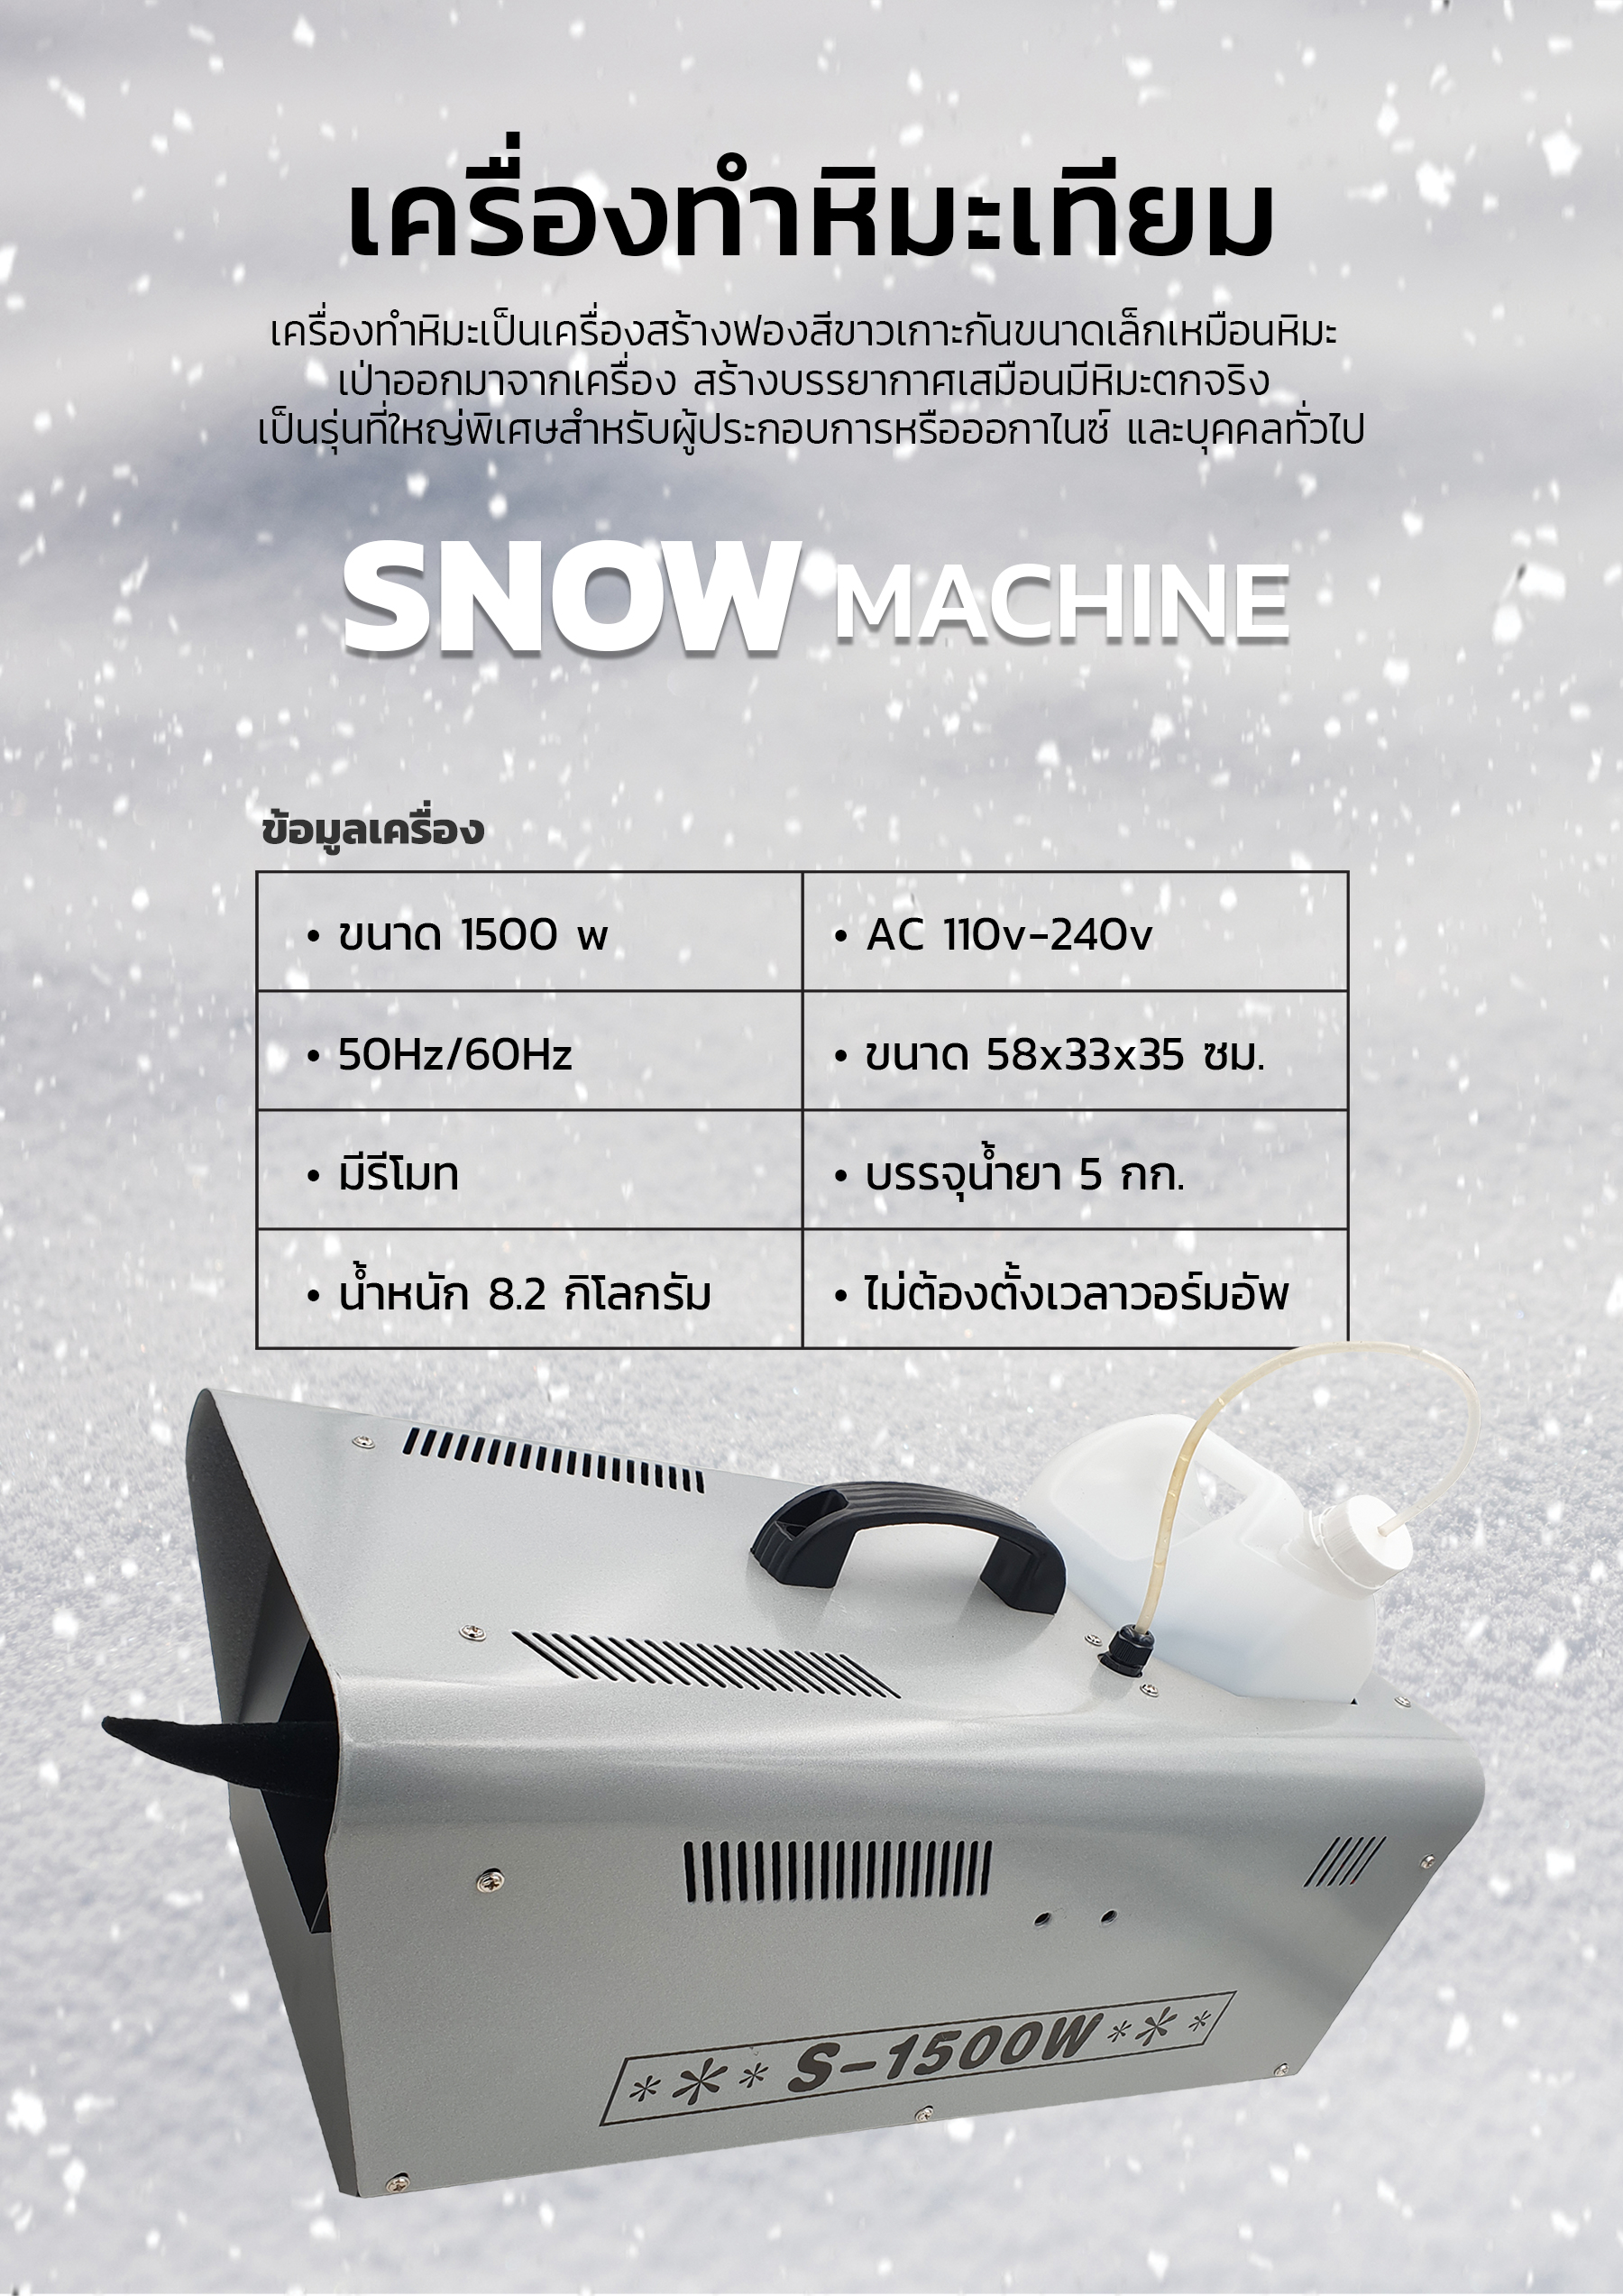 เครื่องทำหิมะเทียม (Snow Machine), เครื่องทำหิมะ, เครื่องเป่าหิมะ